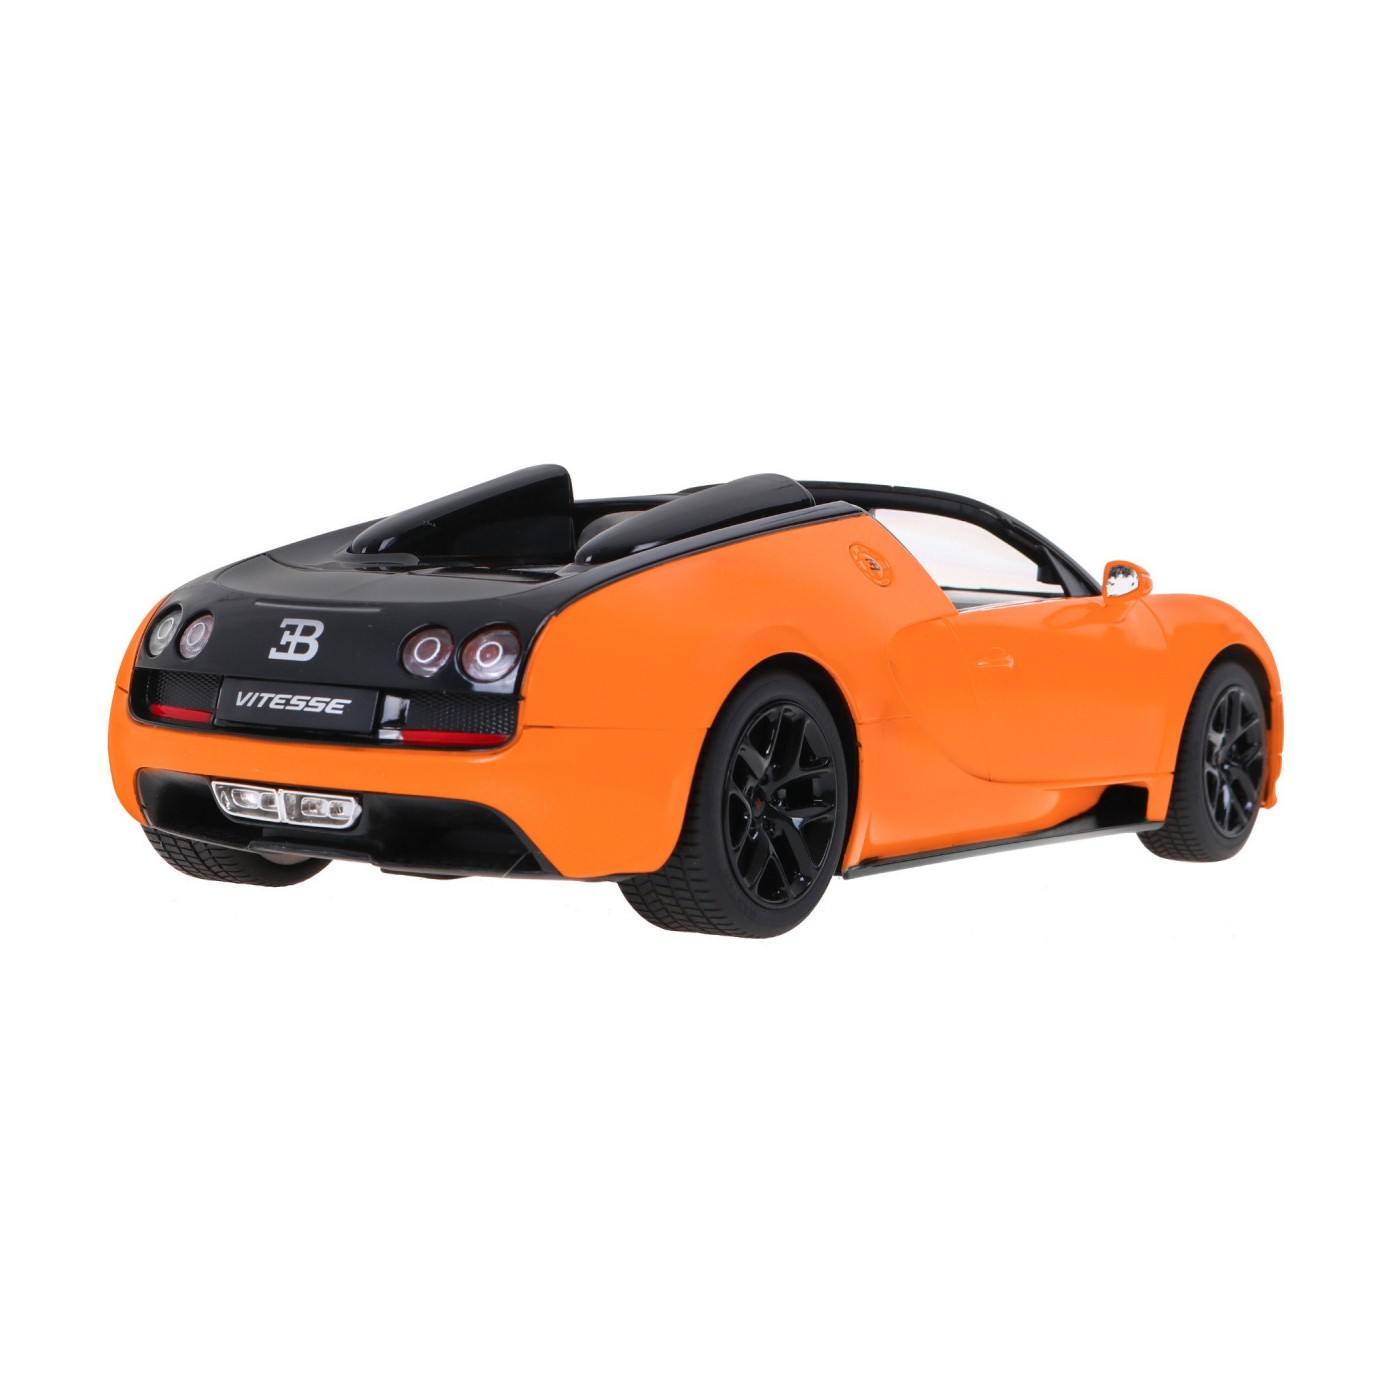 R/C toy car Bugatti Veyron Grand Sport Orange 1:14 RASTAR